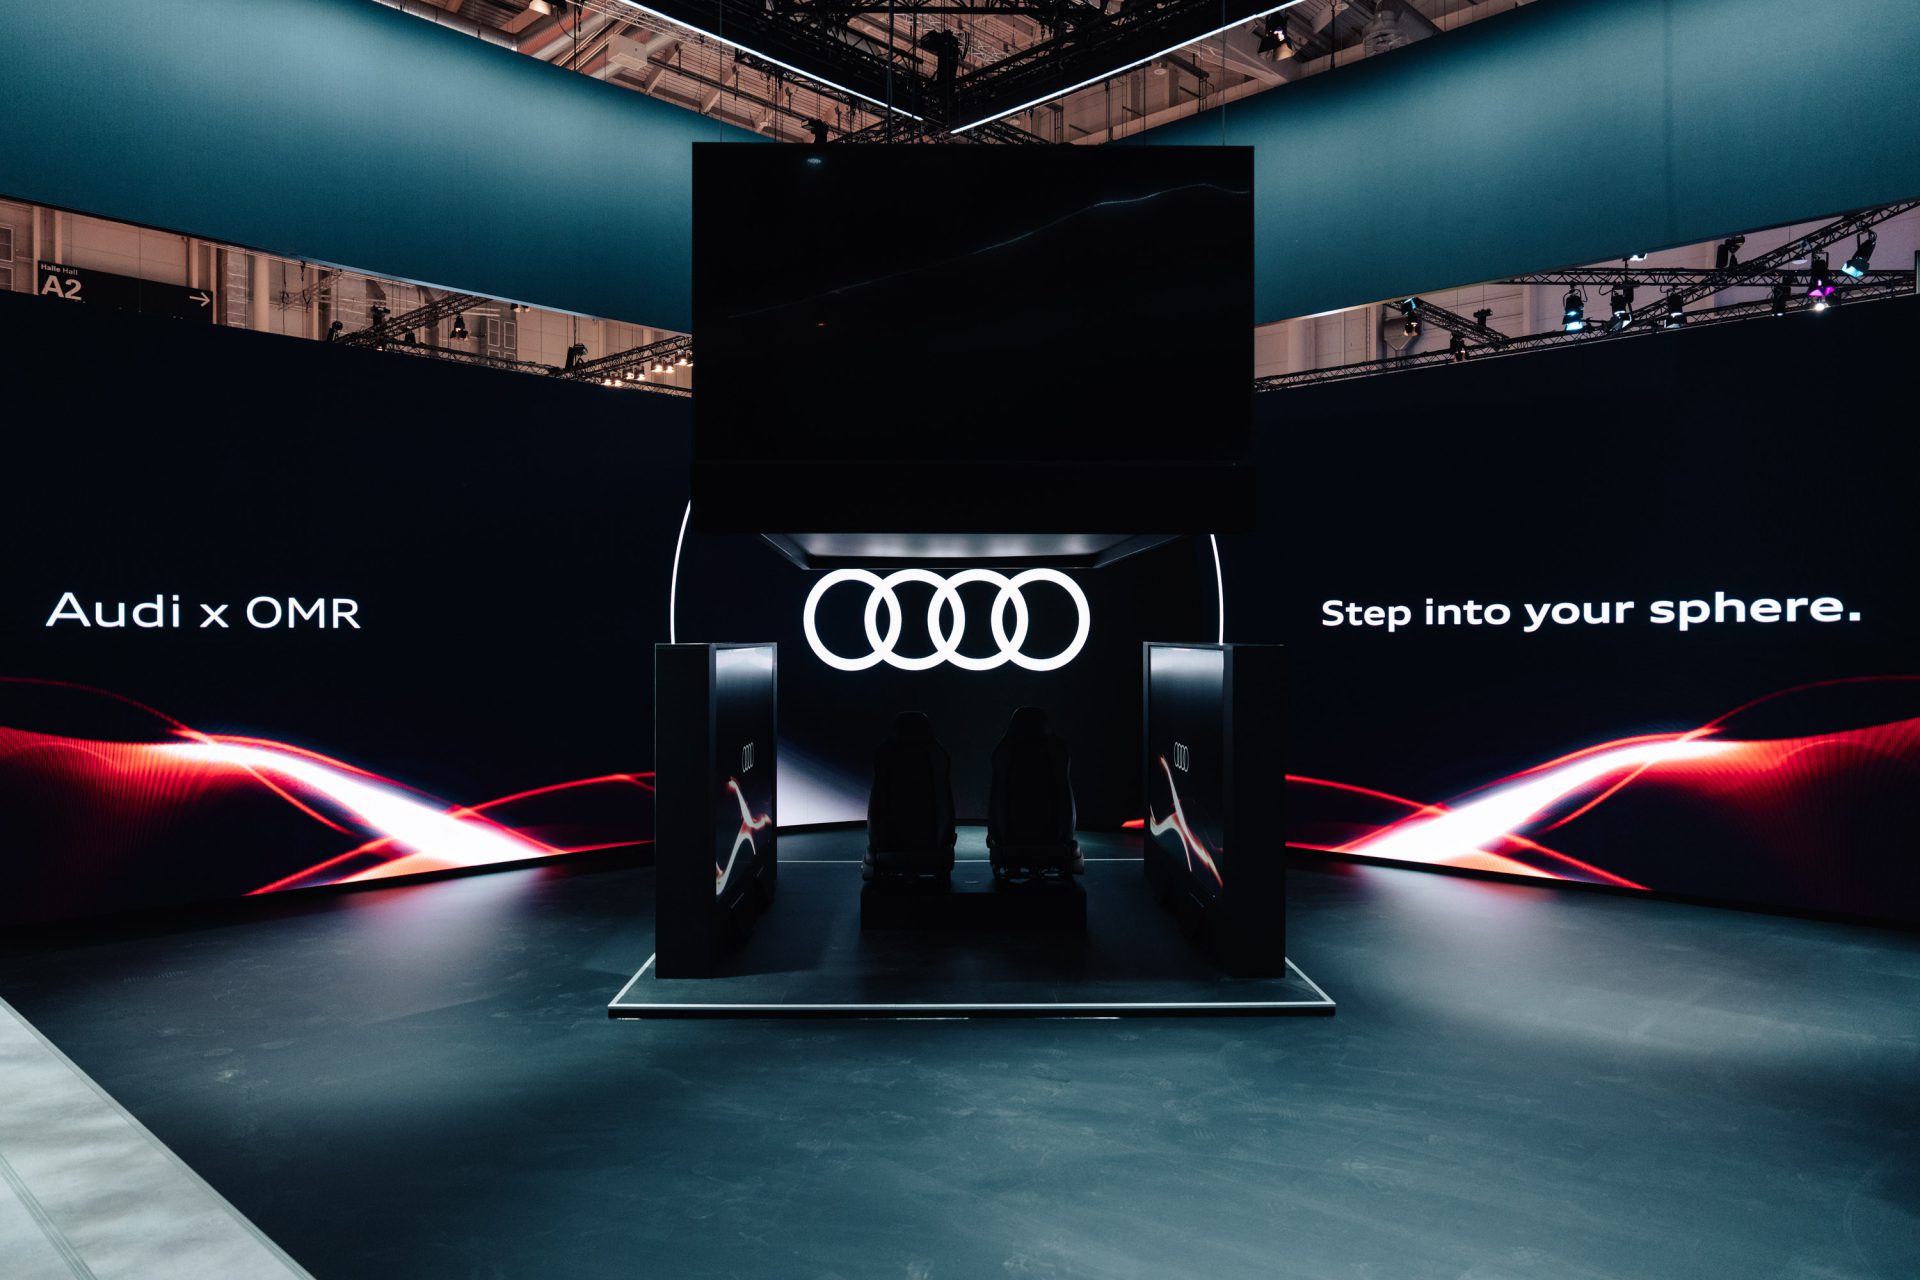 Bühnenkinetik von Schiffini. Sonderkonstruktion für Audi auf der OMR in Hamburg.